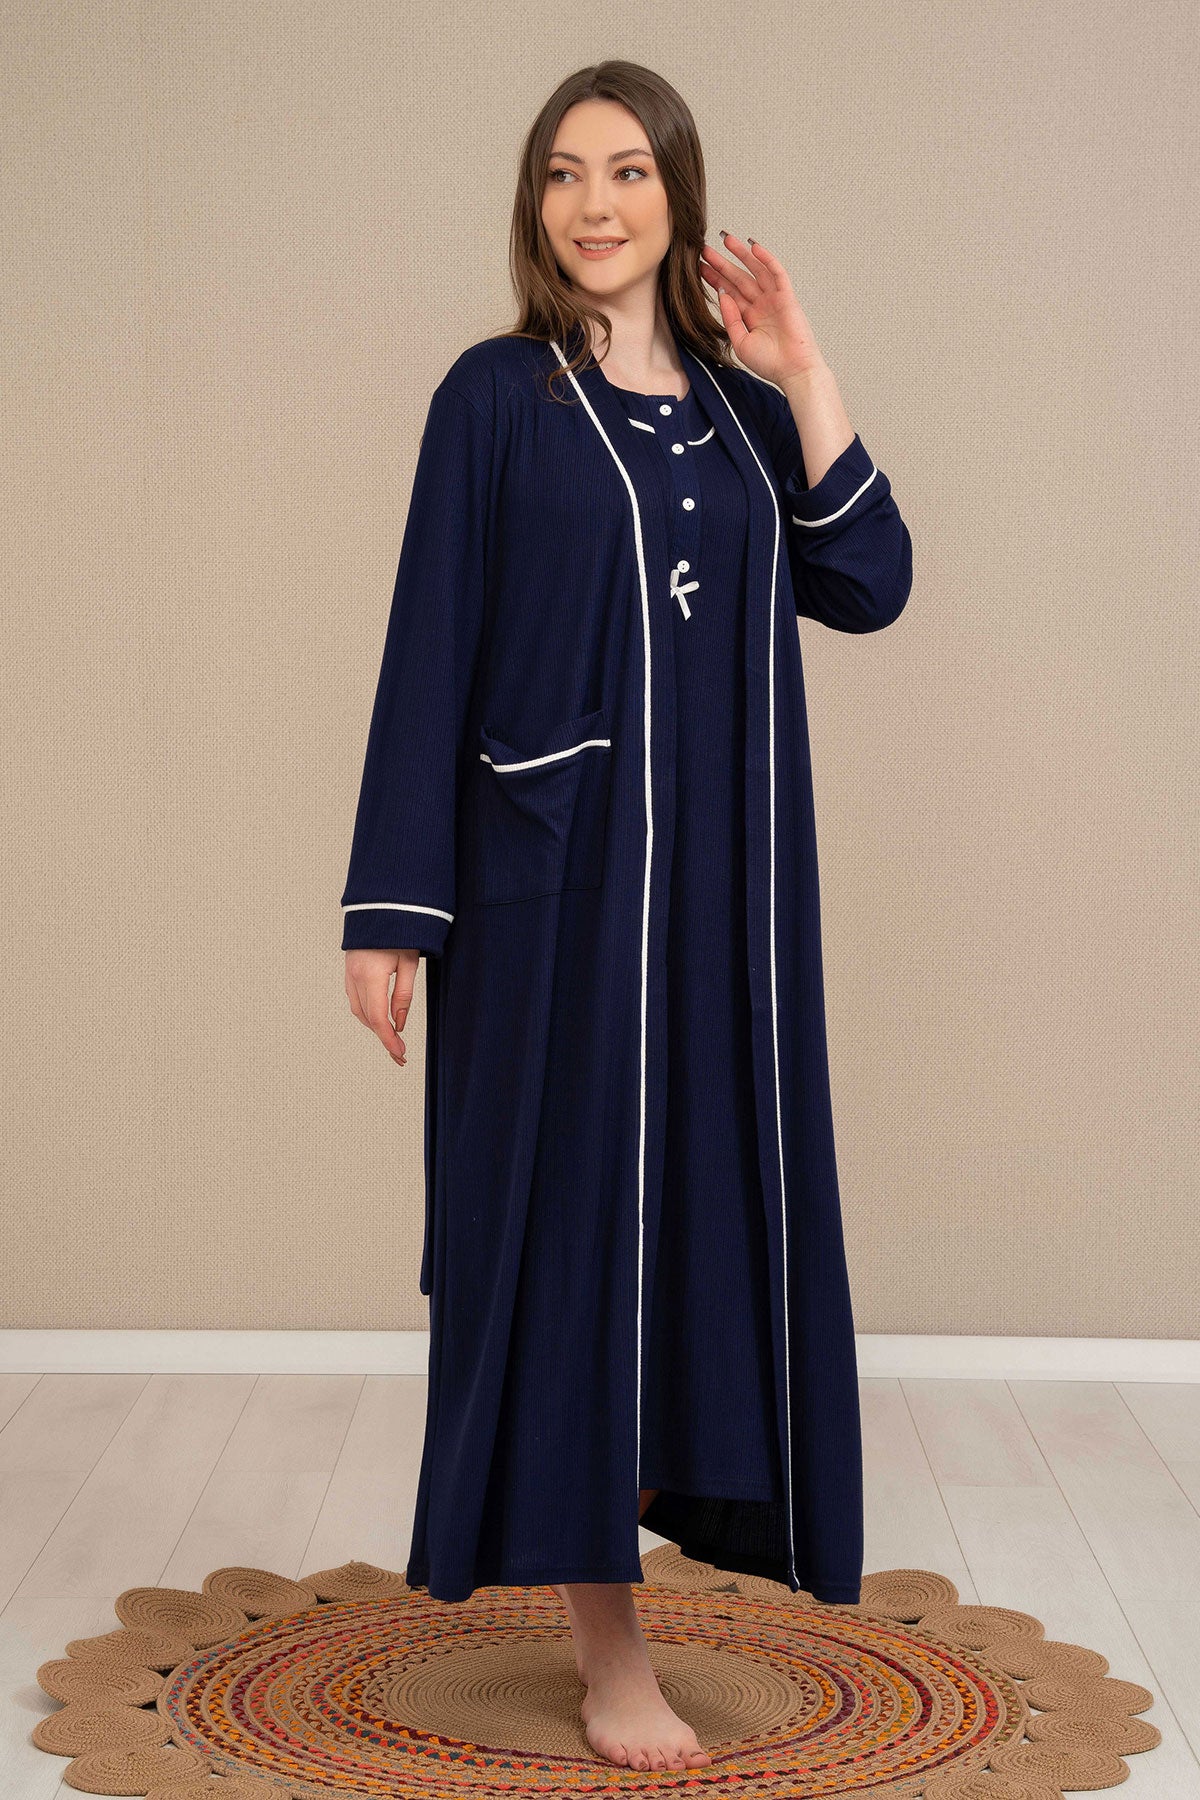 Shopymommy 4525 Strap Maternity & Nursing Nightgown Stripe Robe Navy Blue